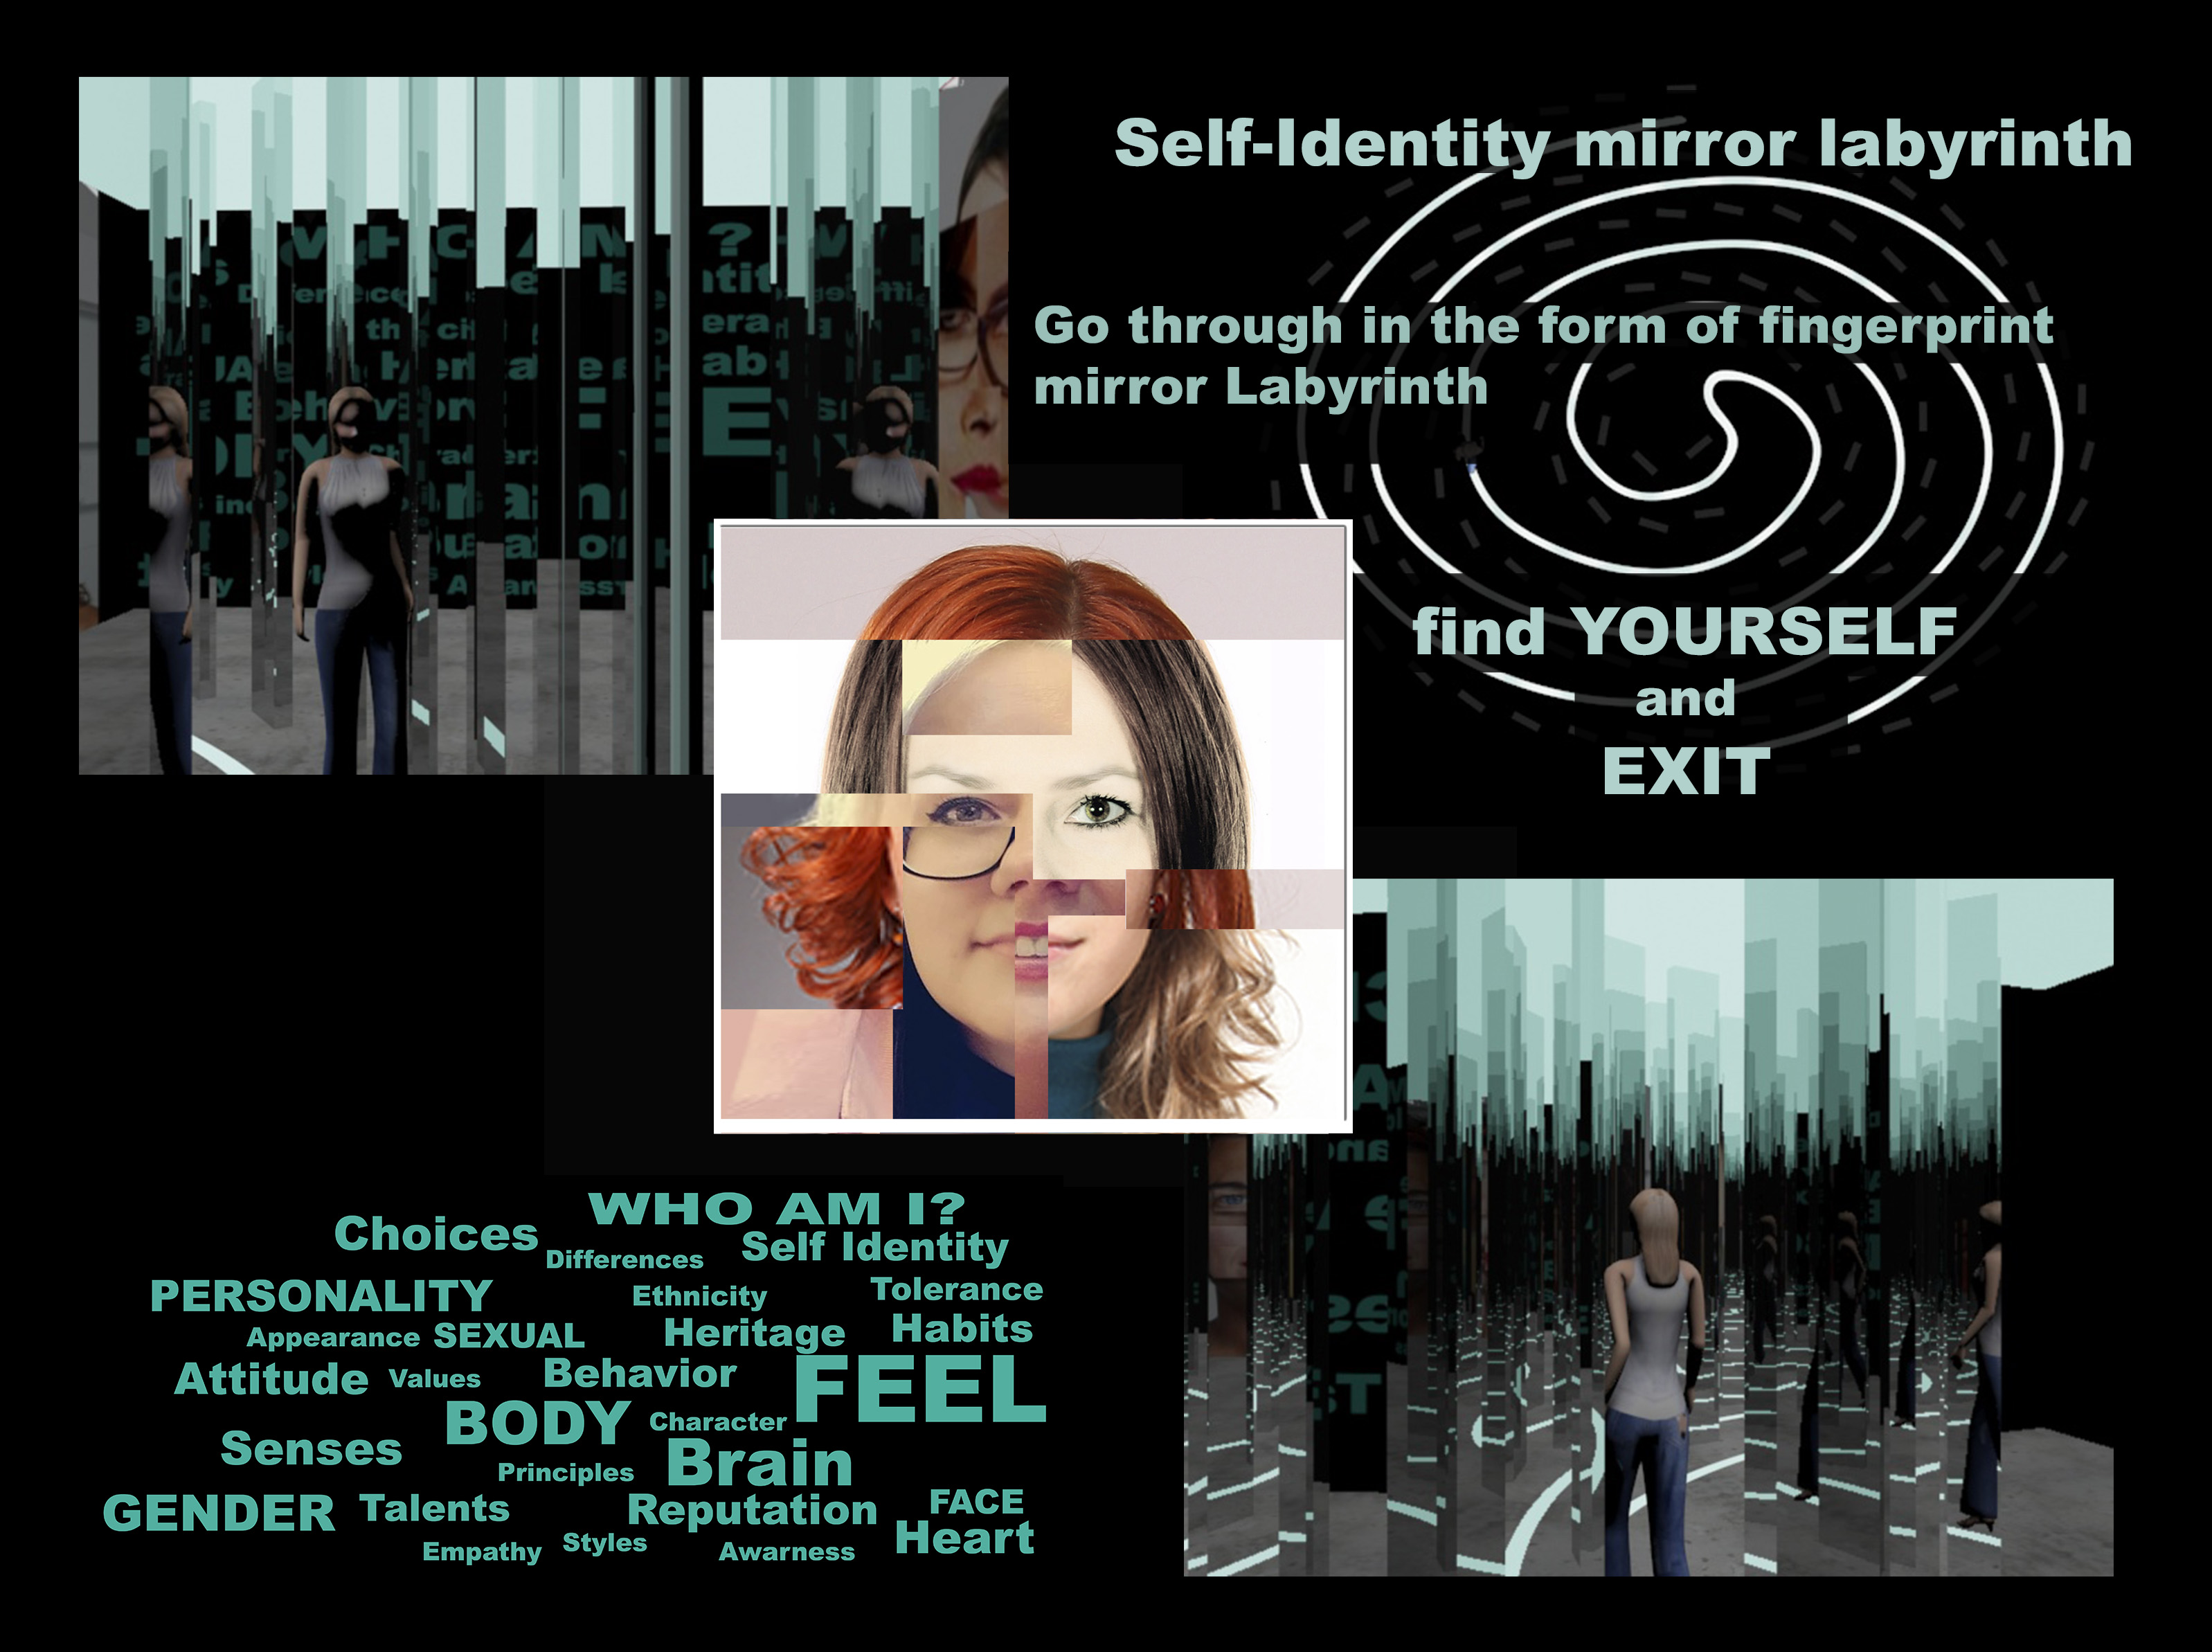 Self-identity mirror labyrinth